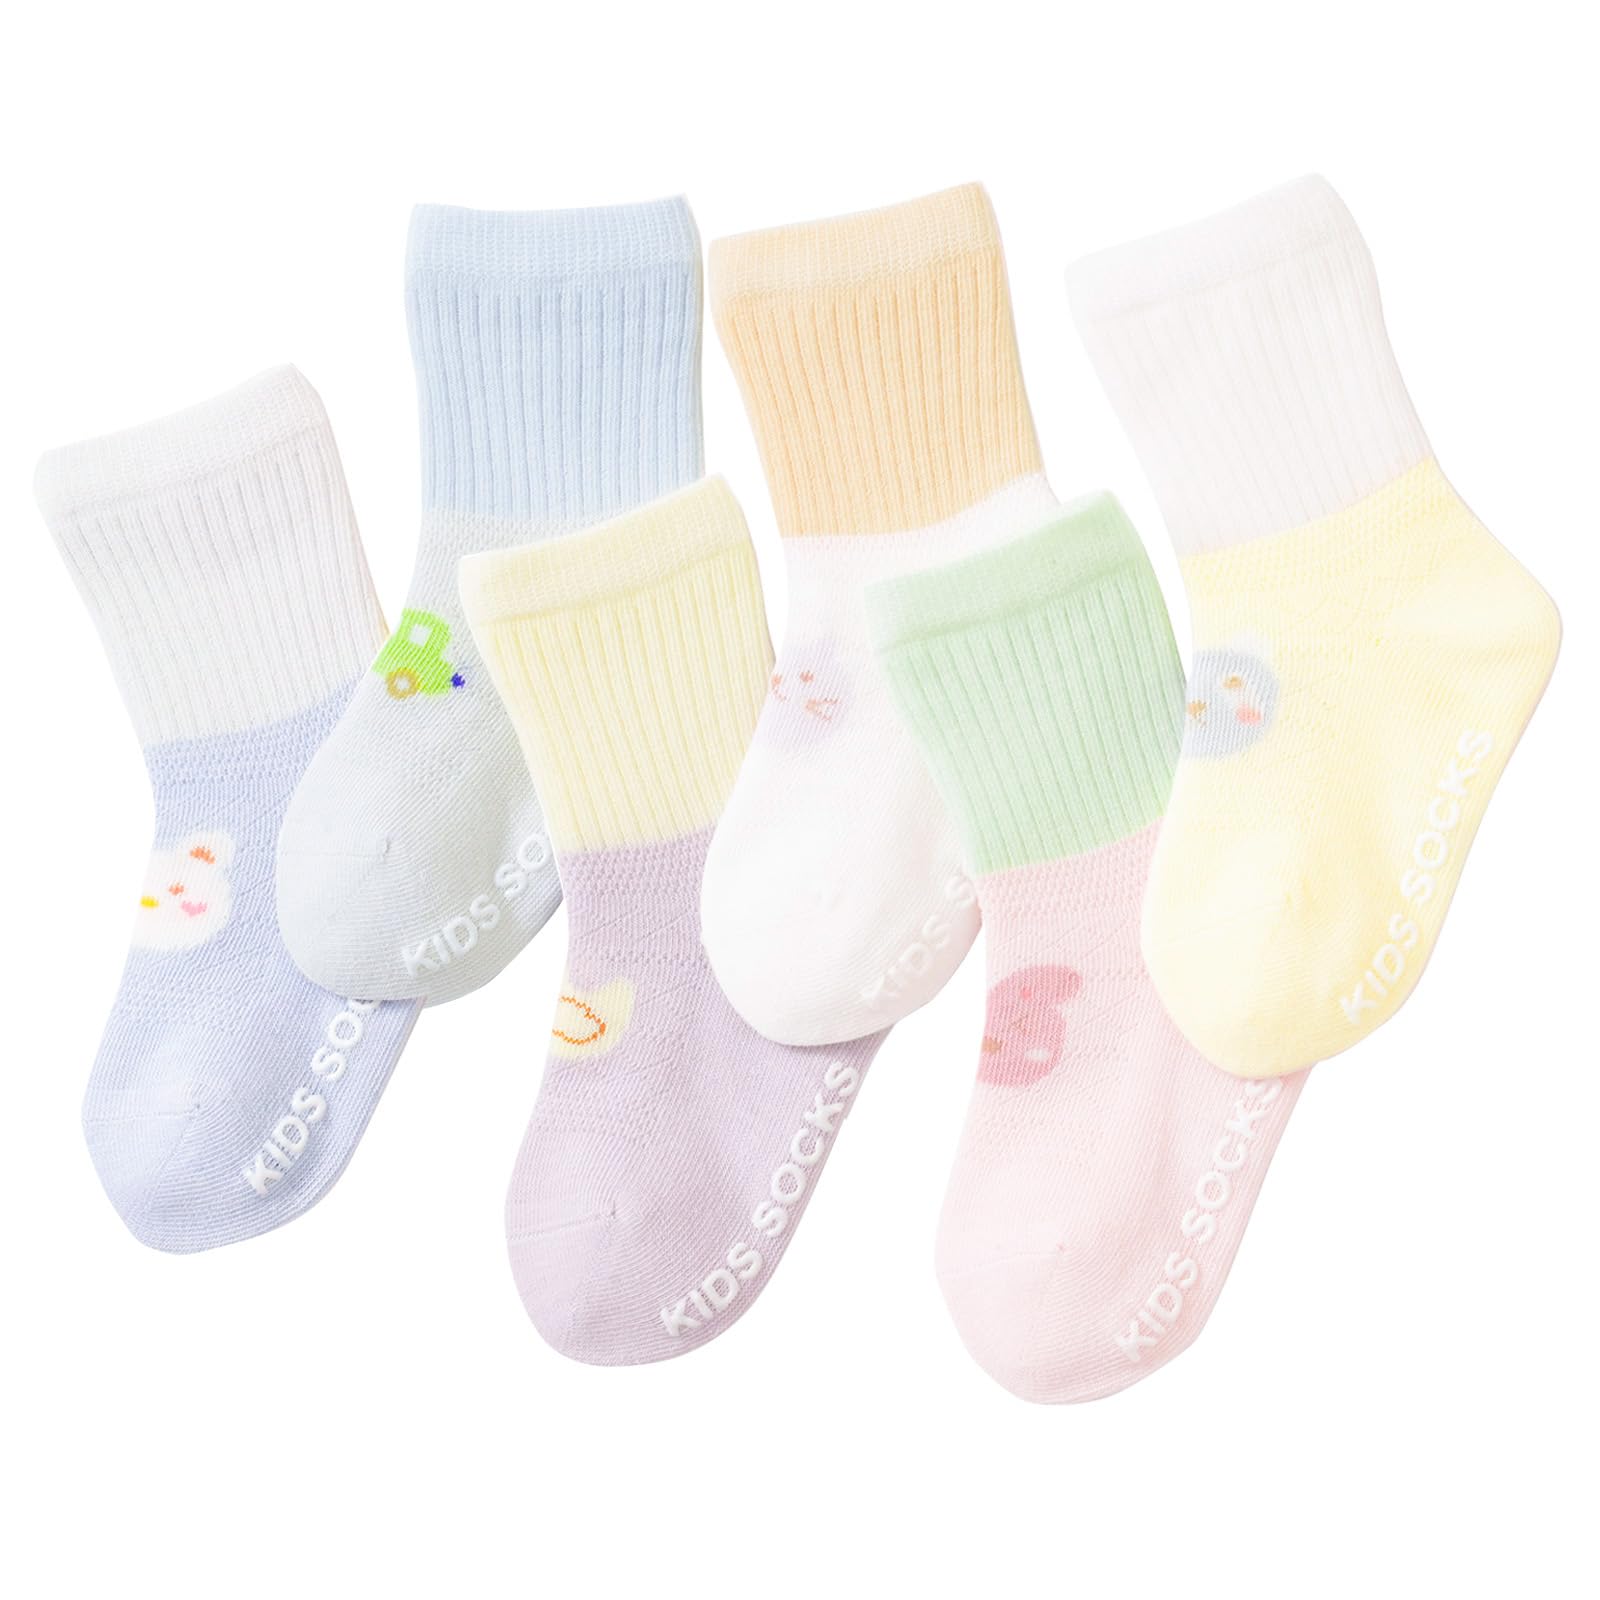 MOMSMENU 赤ちゃん 靴下 夏用 ベビー ソックス 綿 可愛い 滑り止め付き 履きやすい 14cmから16cm 3歳から5歳 6足セット